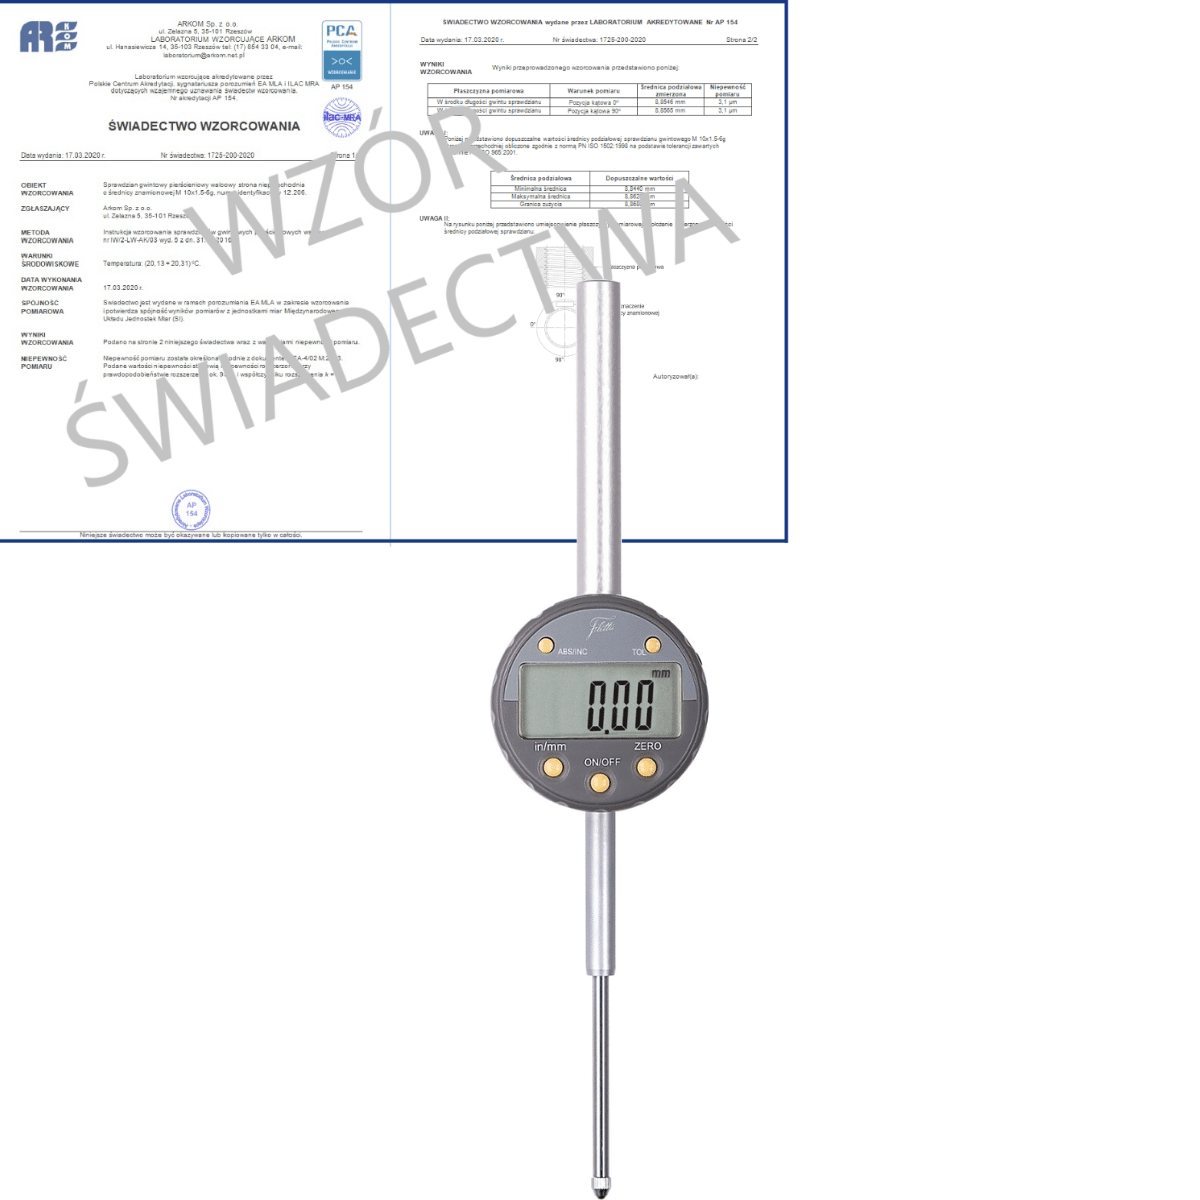 SCHUT czujnik elektroniczny 0-50/0.01mm + świadectwo wzorcowania PCA  907.652 WZORC (Zdjęcie 1)